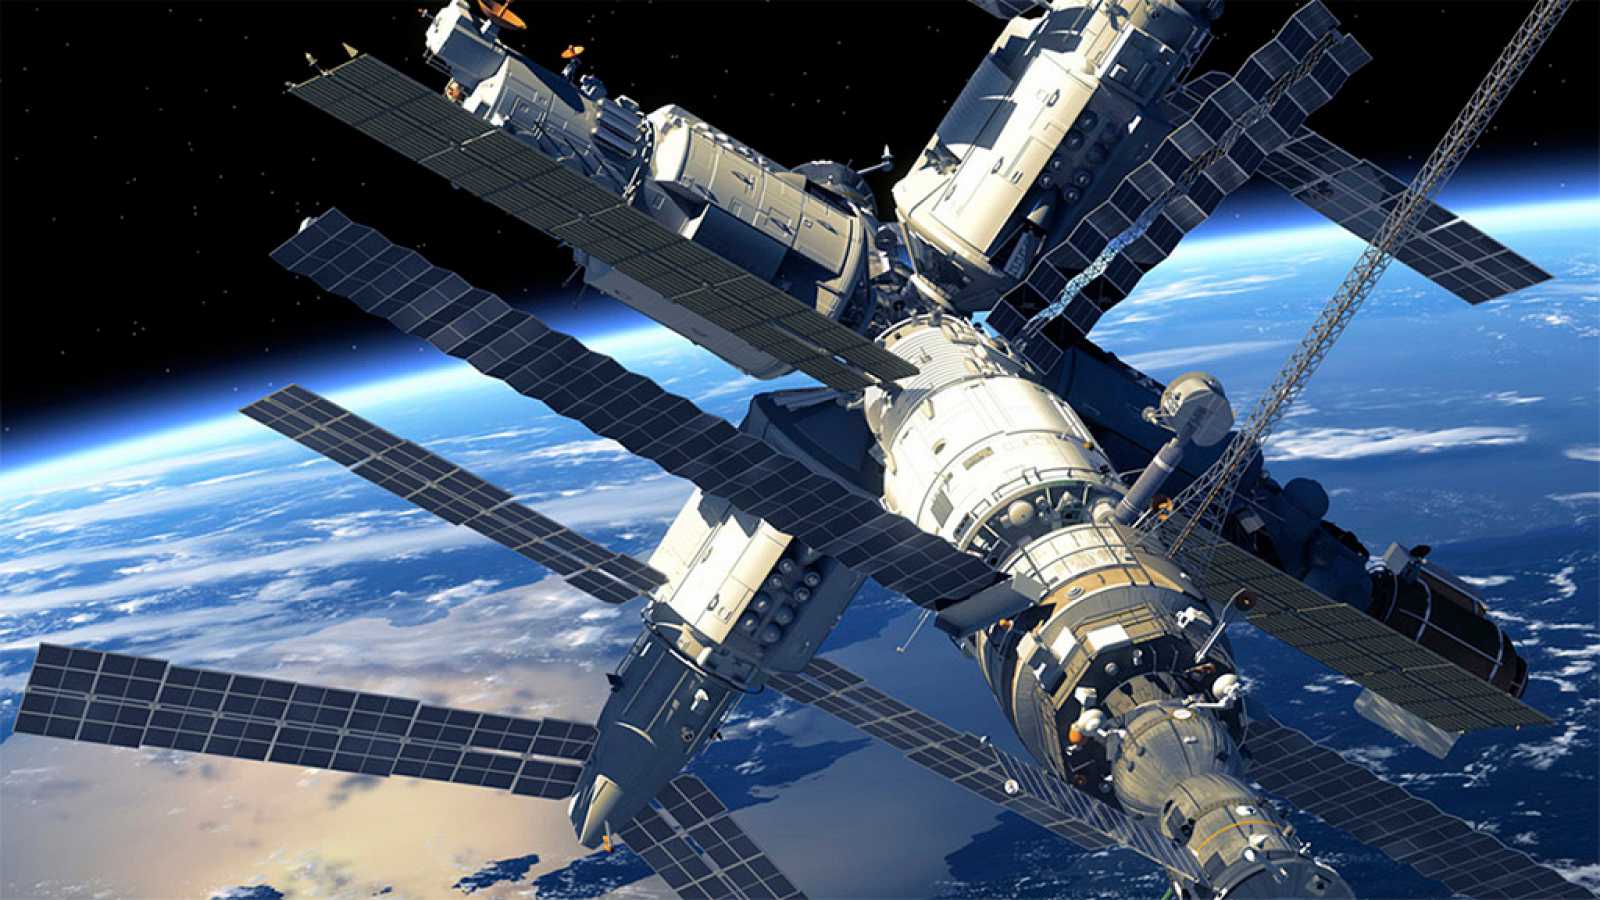 La Expedición 1 inició el envío de misiones humanas permanentes a la Estación Espacial Internacional en el año 2000